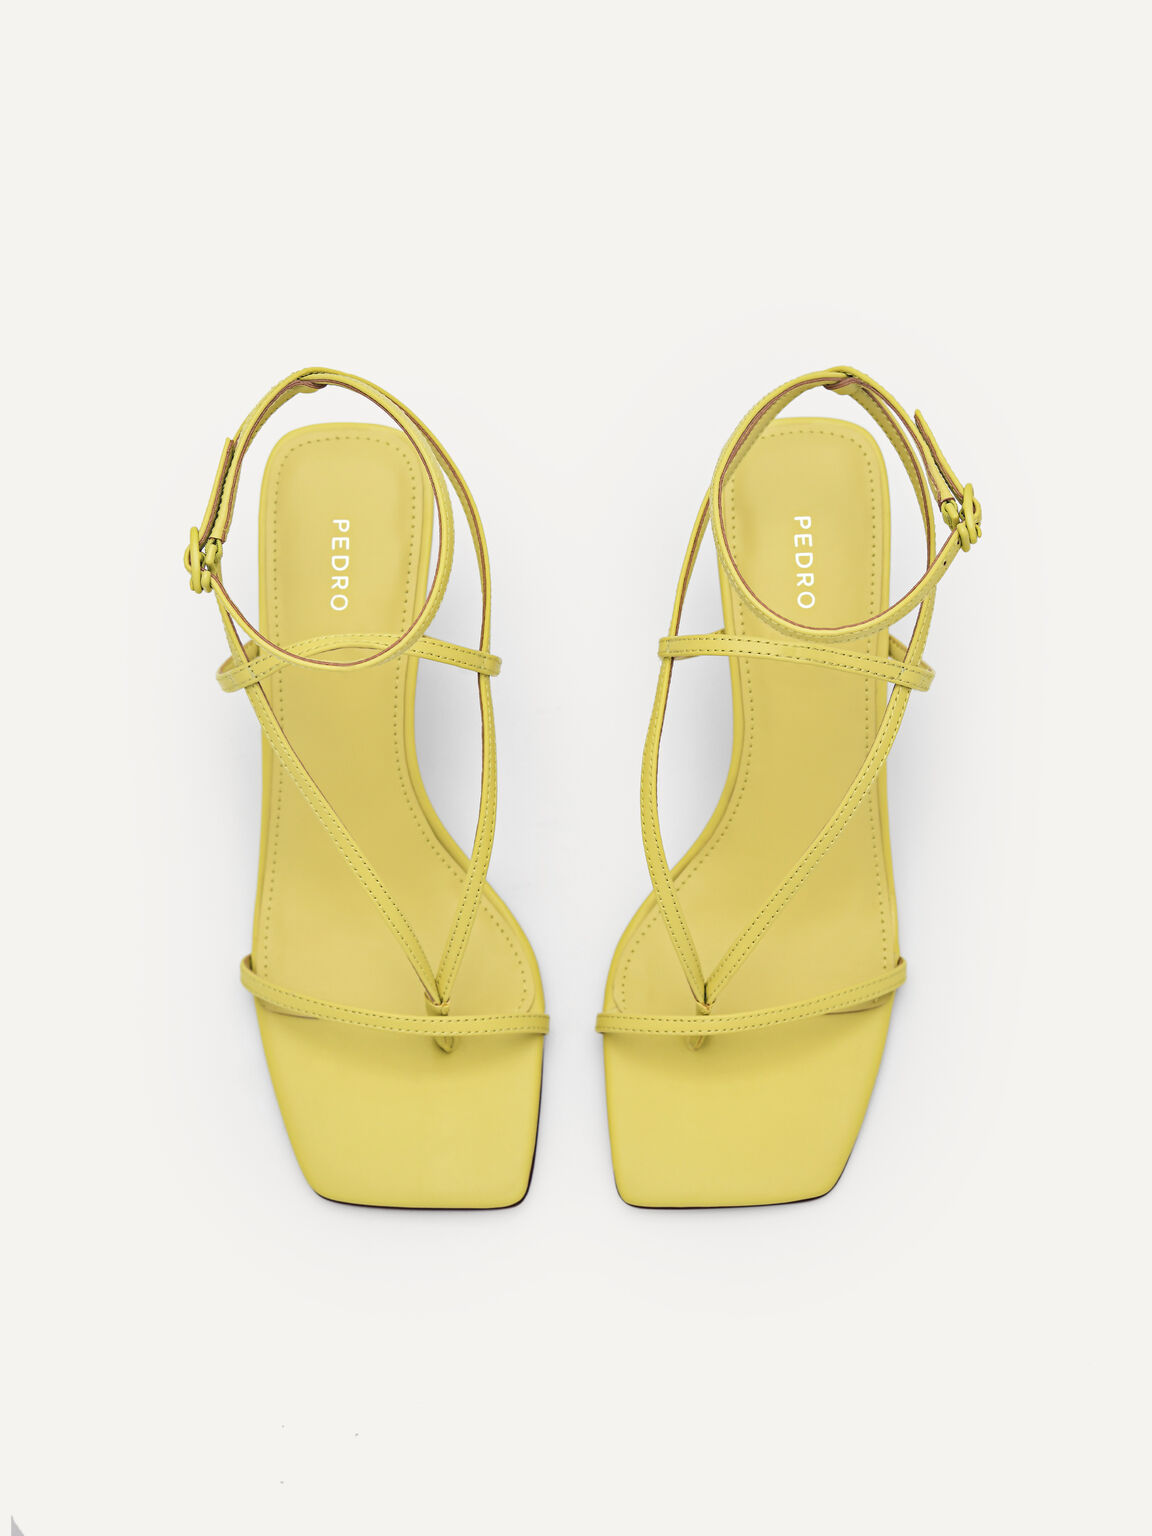 Jatte Heel Sandals, Yellow, hi-res